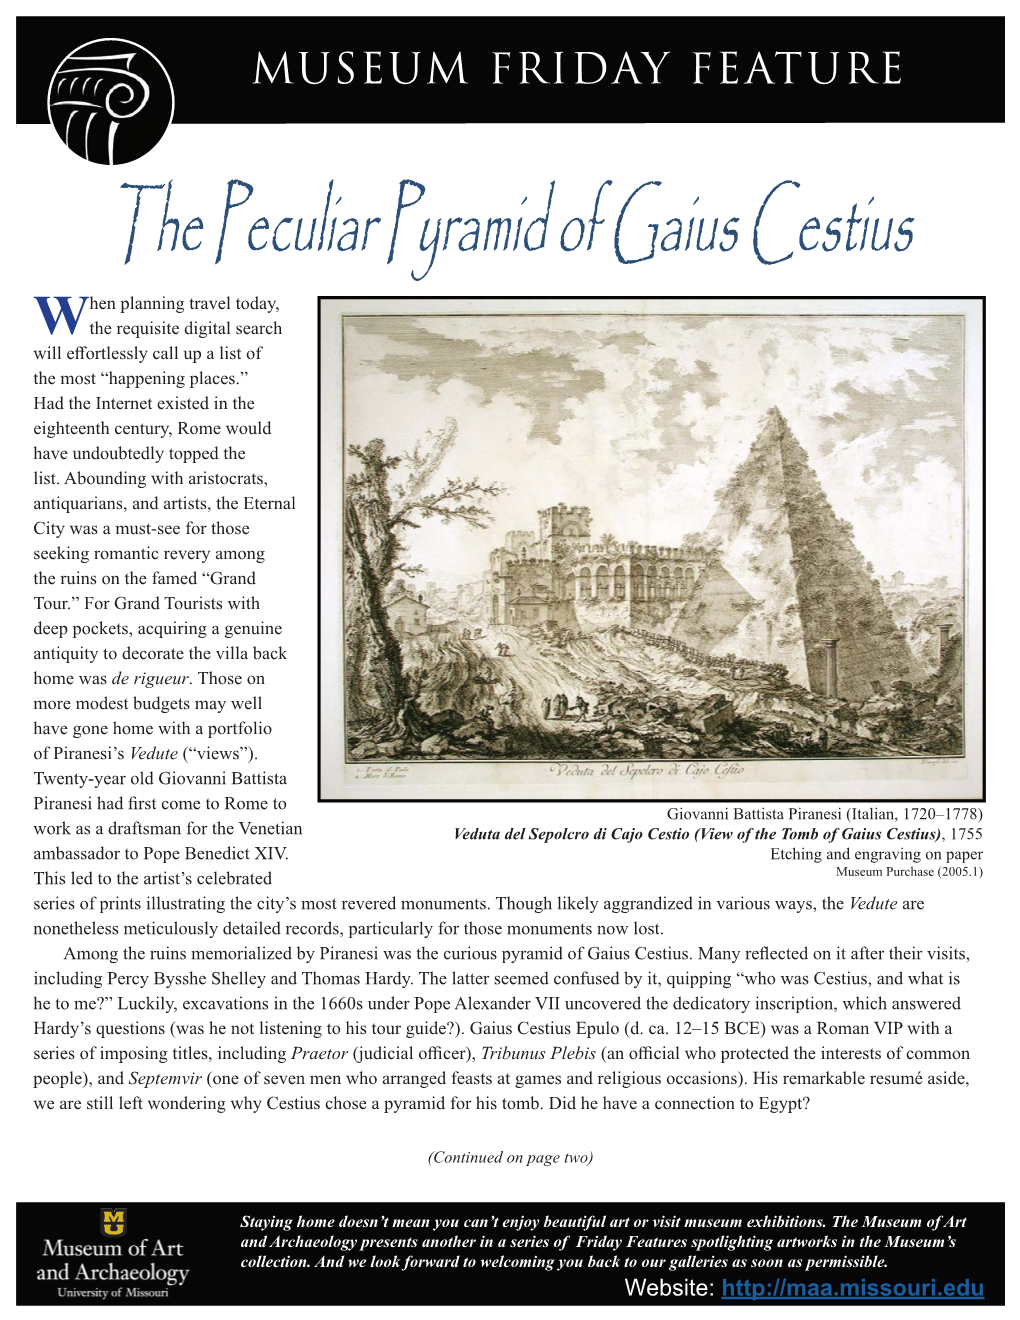 The Peculiar Pyramid of Gaius Cestius